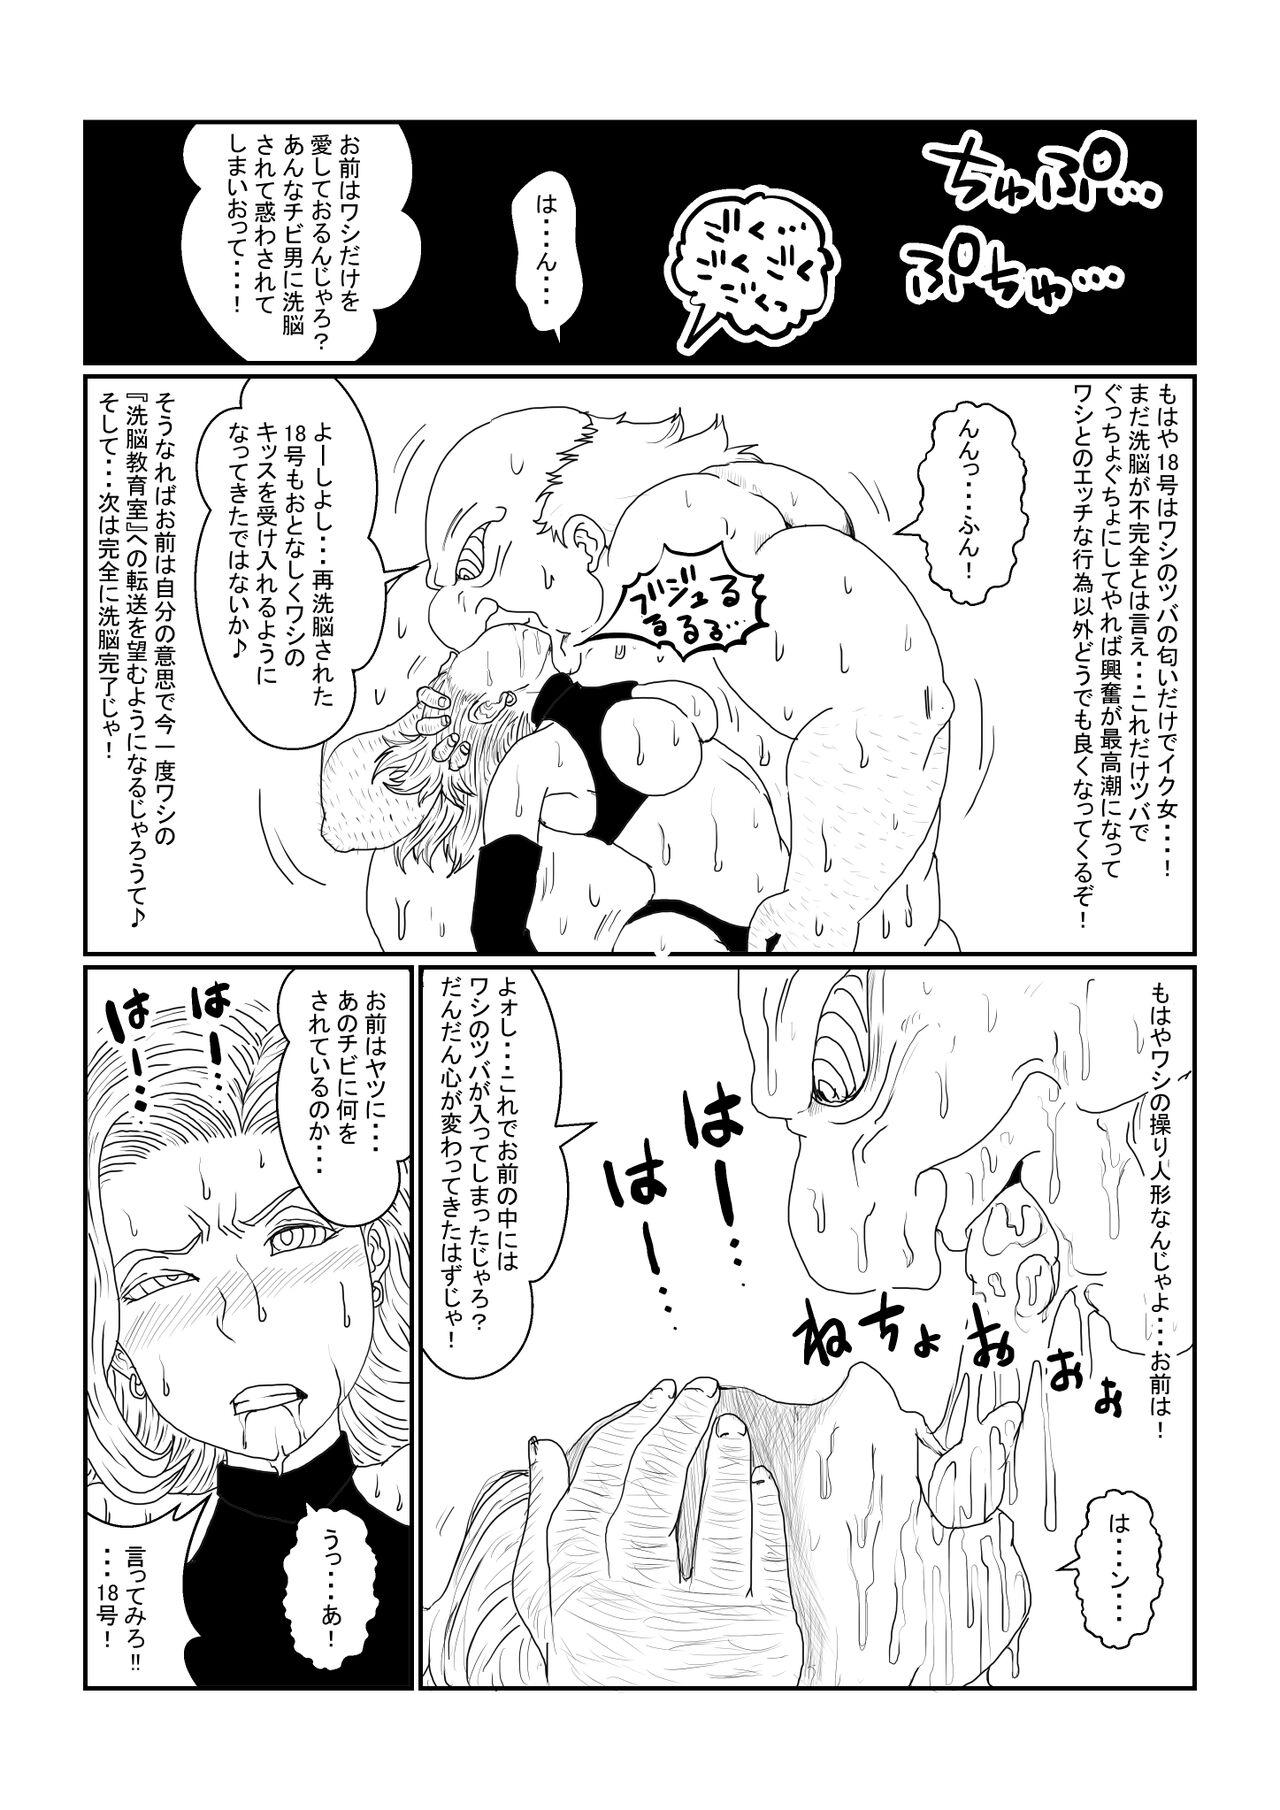 Online [Alice.Blood] Re: Sennou Kyouiku-shitsu ~Jinzou Ningen 18-gou Hen~ Sono Ichi 2 (Dragon Ball Z) - Dragon ball z Breasts - Page 10